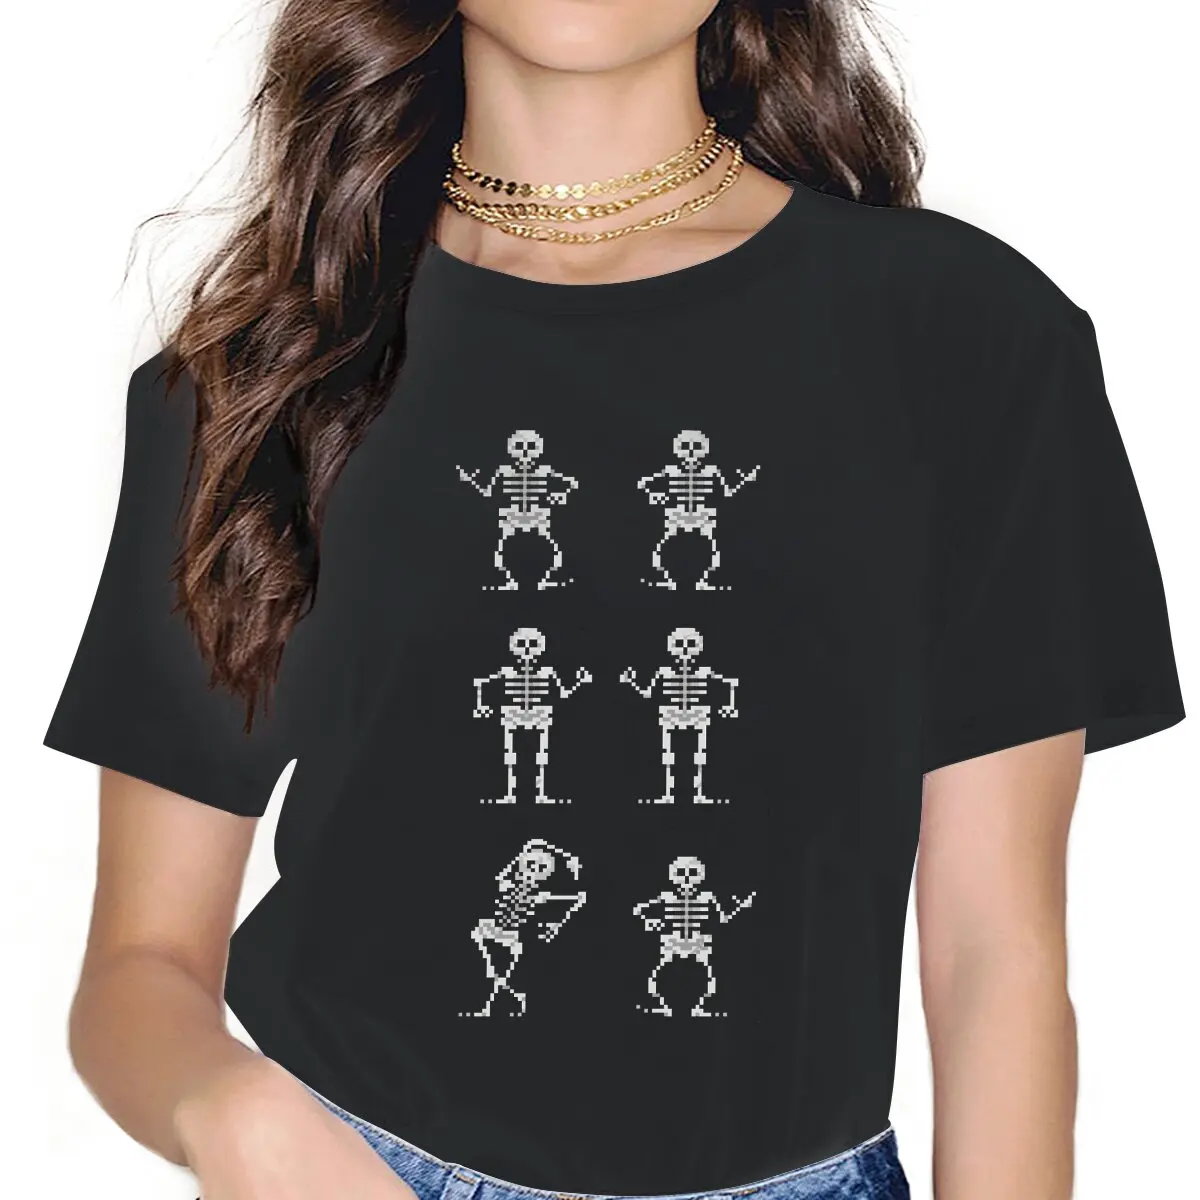 

Bone Parents Dance Women Shirts Monkey Island Game LeChuck Elaine Guybrush Oversized T-shirt Kawaii Vintage Female Clothing